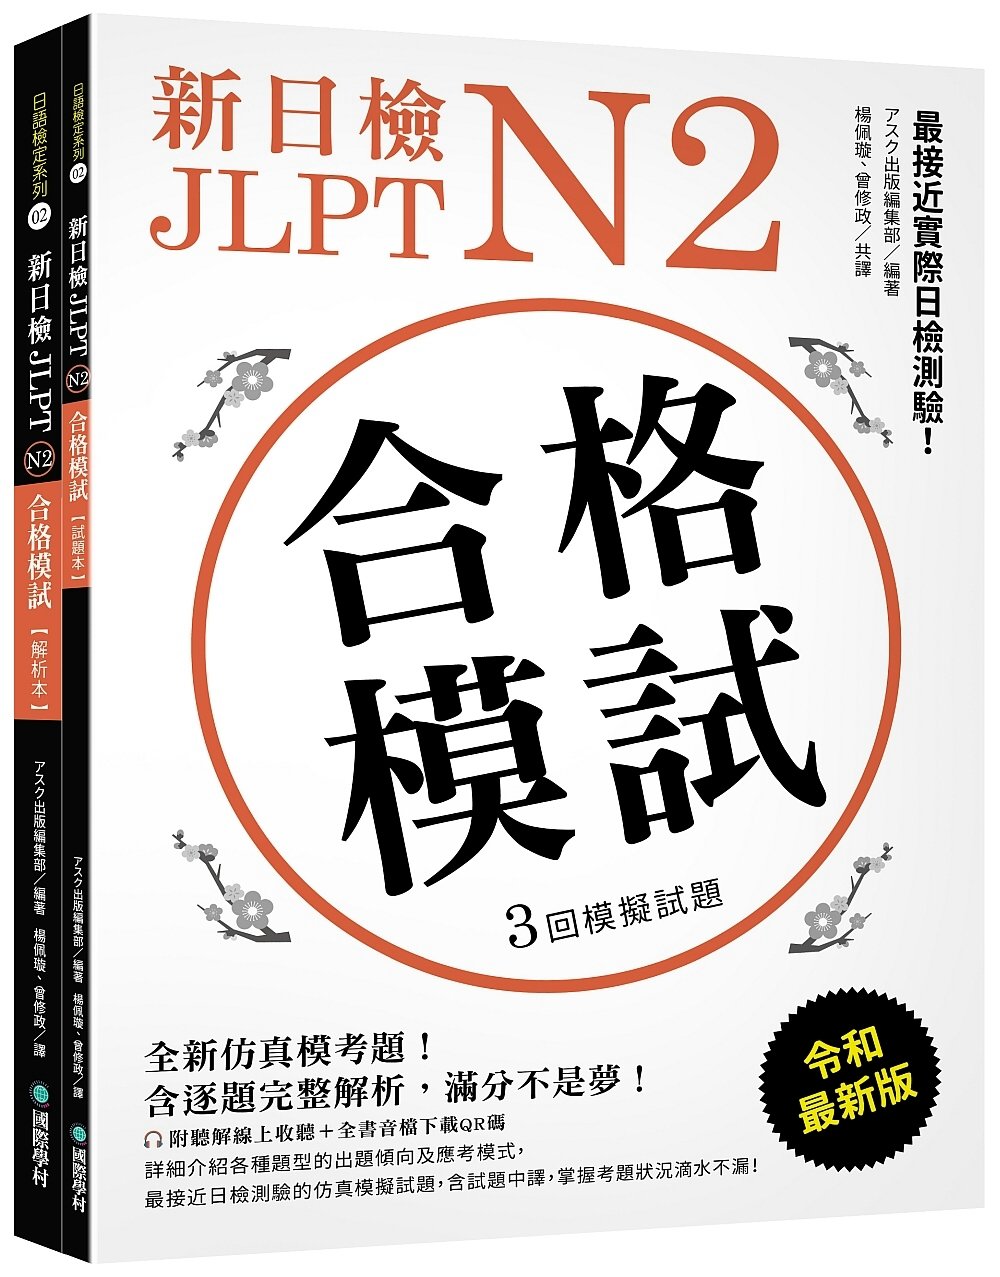 新日檢 JLPT N2 合格模試：全新仿真模考題，含逐題完整解析，滿分不是夢！（附聽解線上收聽+音檔下載QR碼）